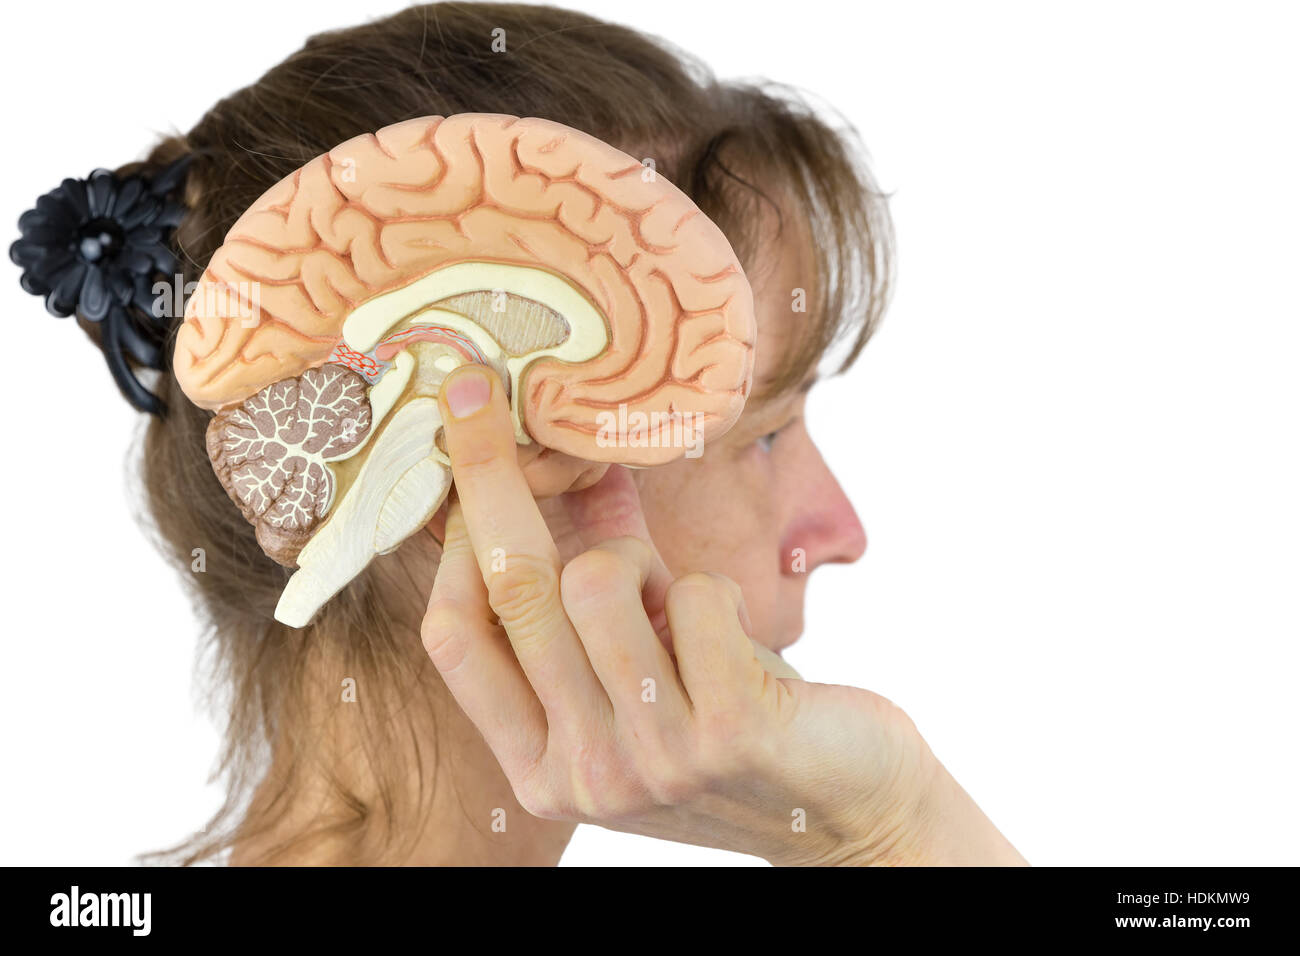 Frau hält Gehirn Modell gegen Kopf isoliert auf weißem Hintergrund Stockfoto